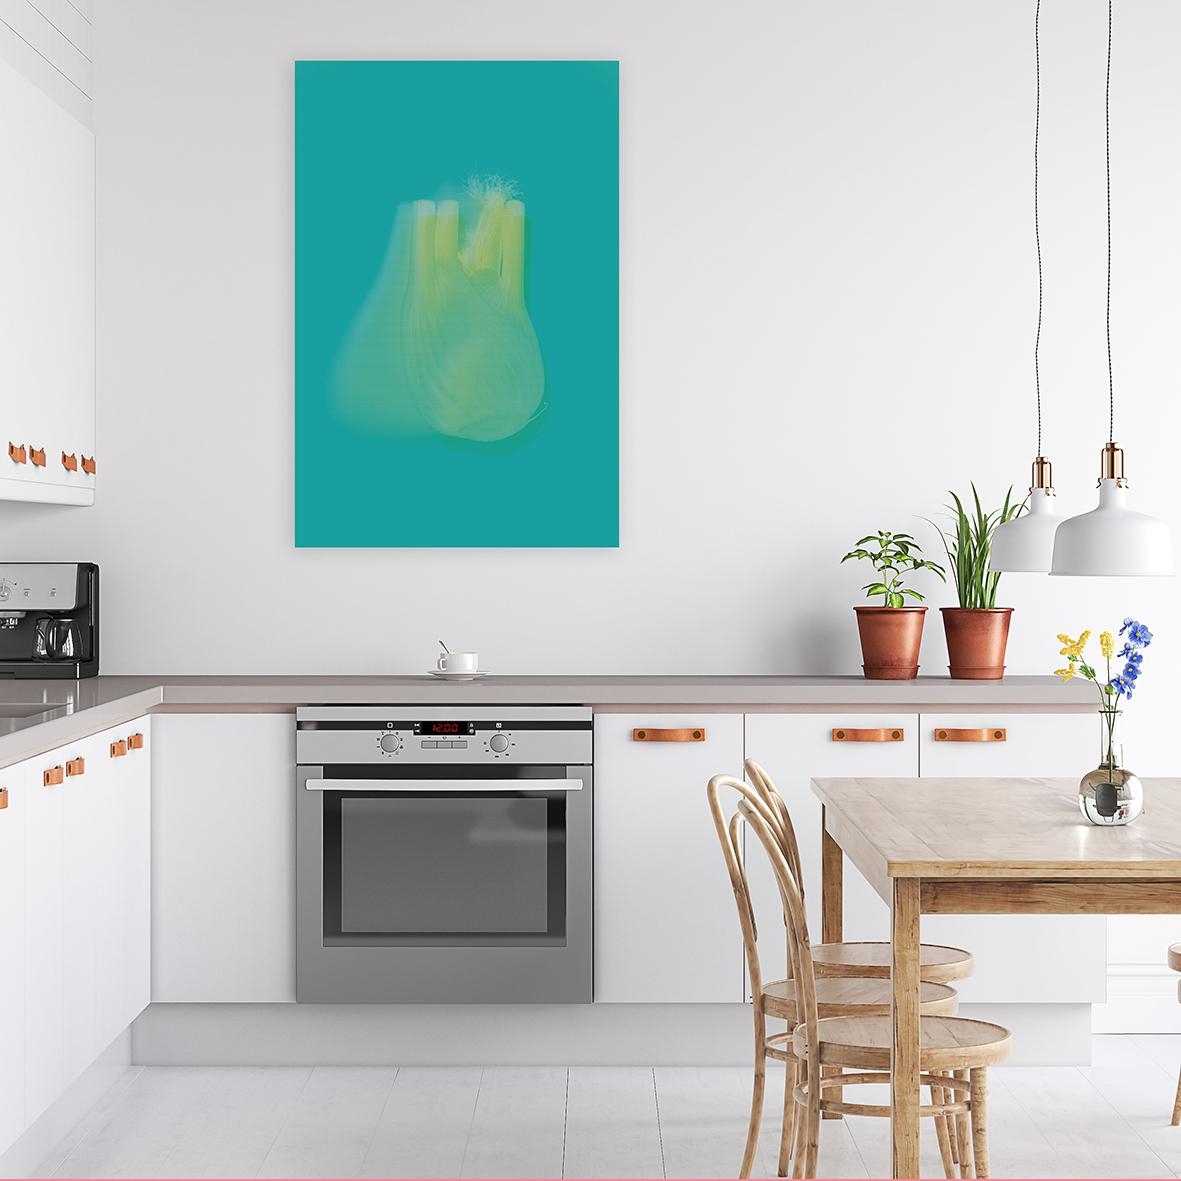 Das Gemüse direkt an die Wand hängen. "Fenchel", Fineartprint
Erhältlich unter www.zeitloops.de
#kitchen #veggie